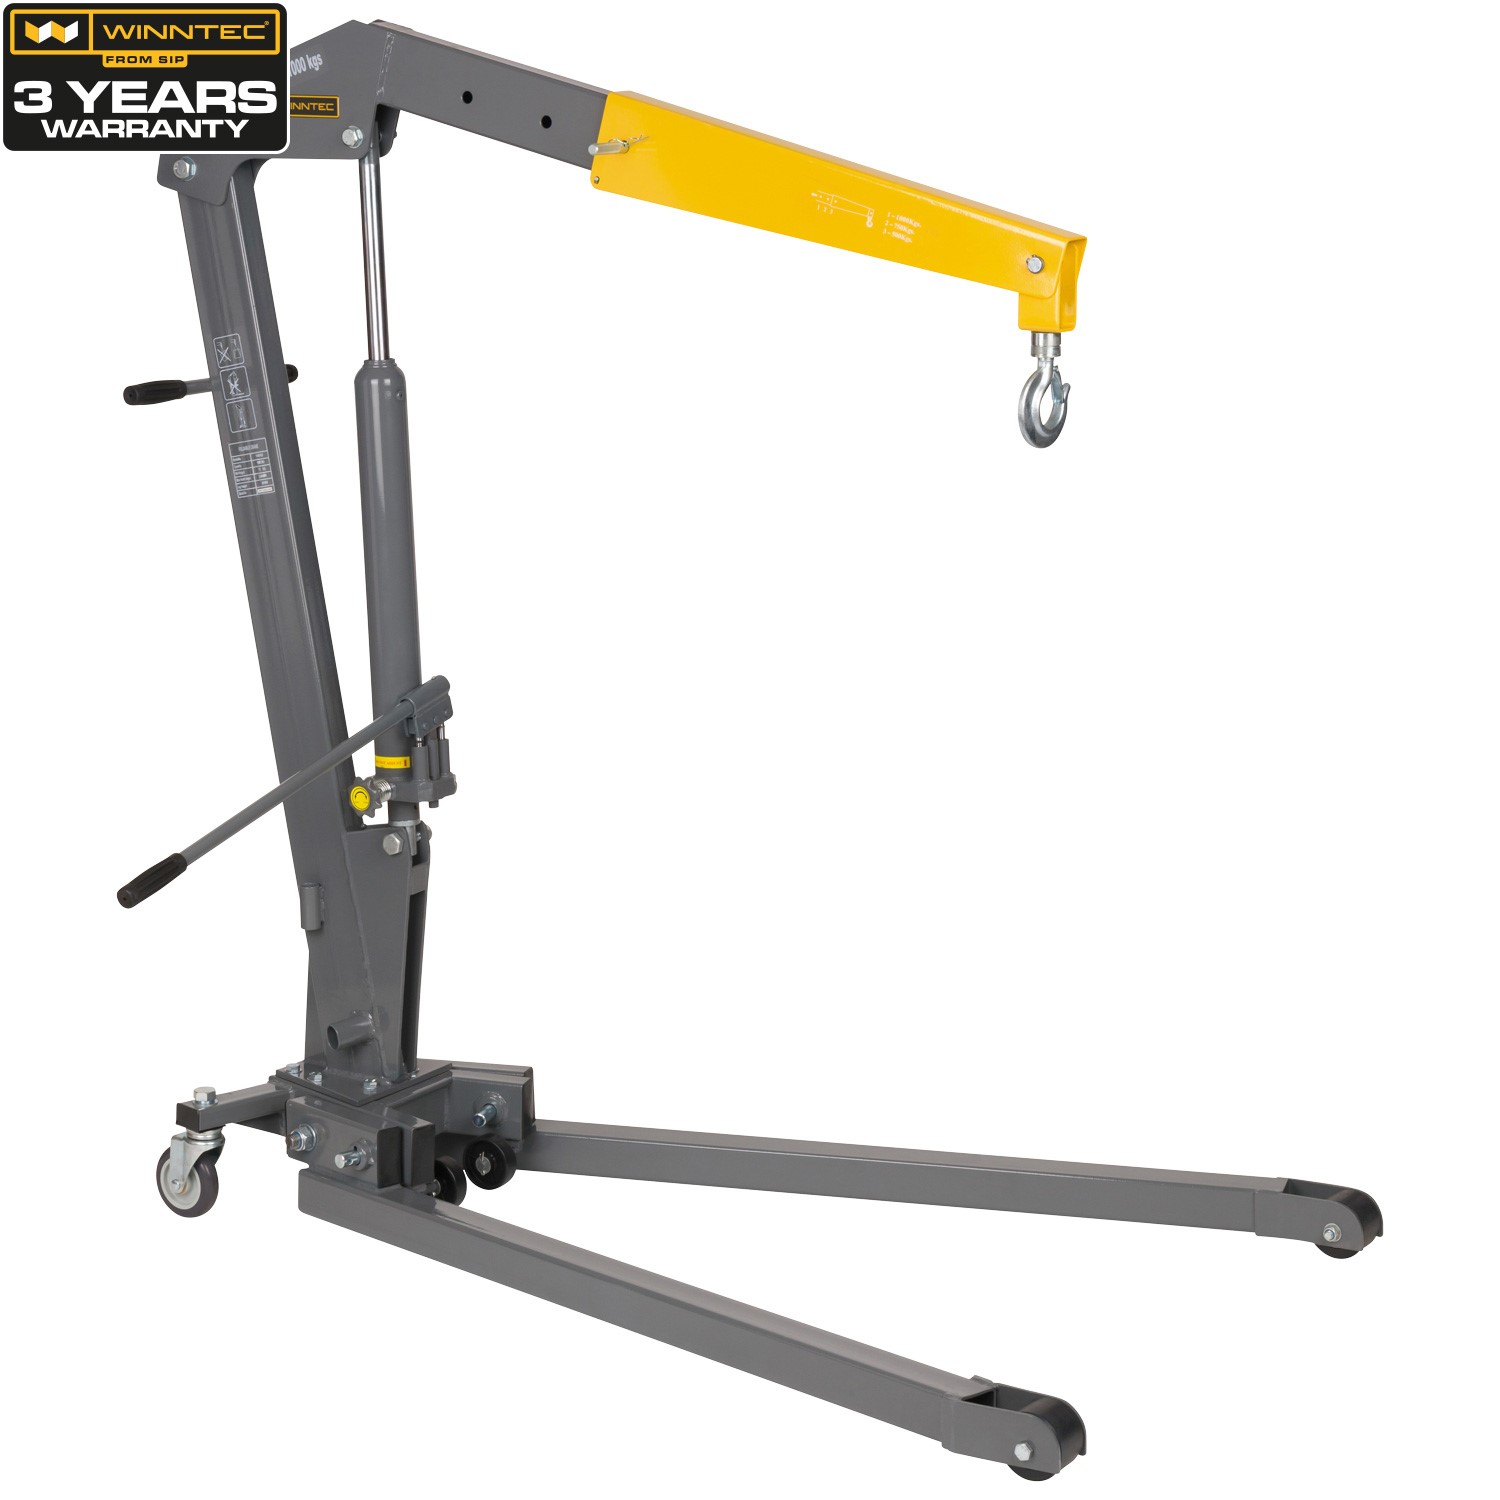 Workshop Crane 1000kg » Toolwarehouse » Buy Tools Online